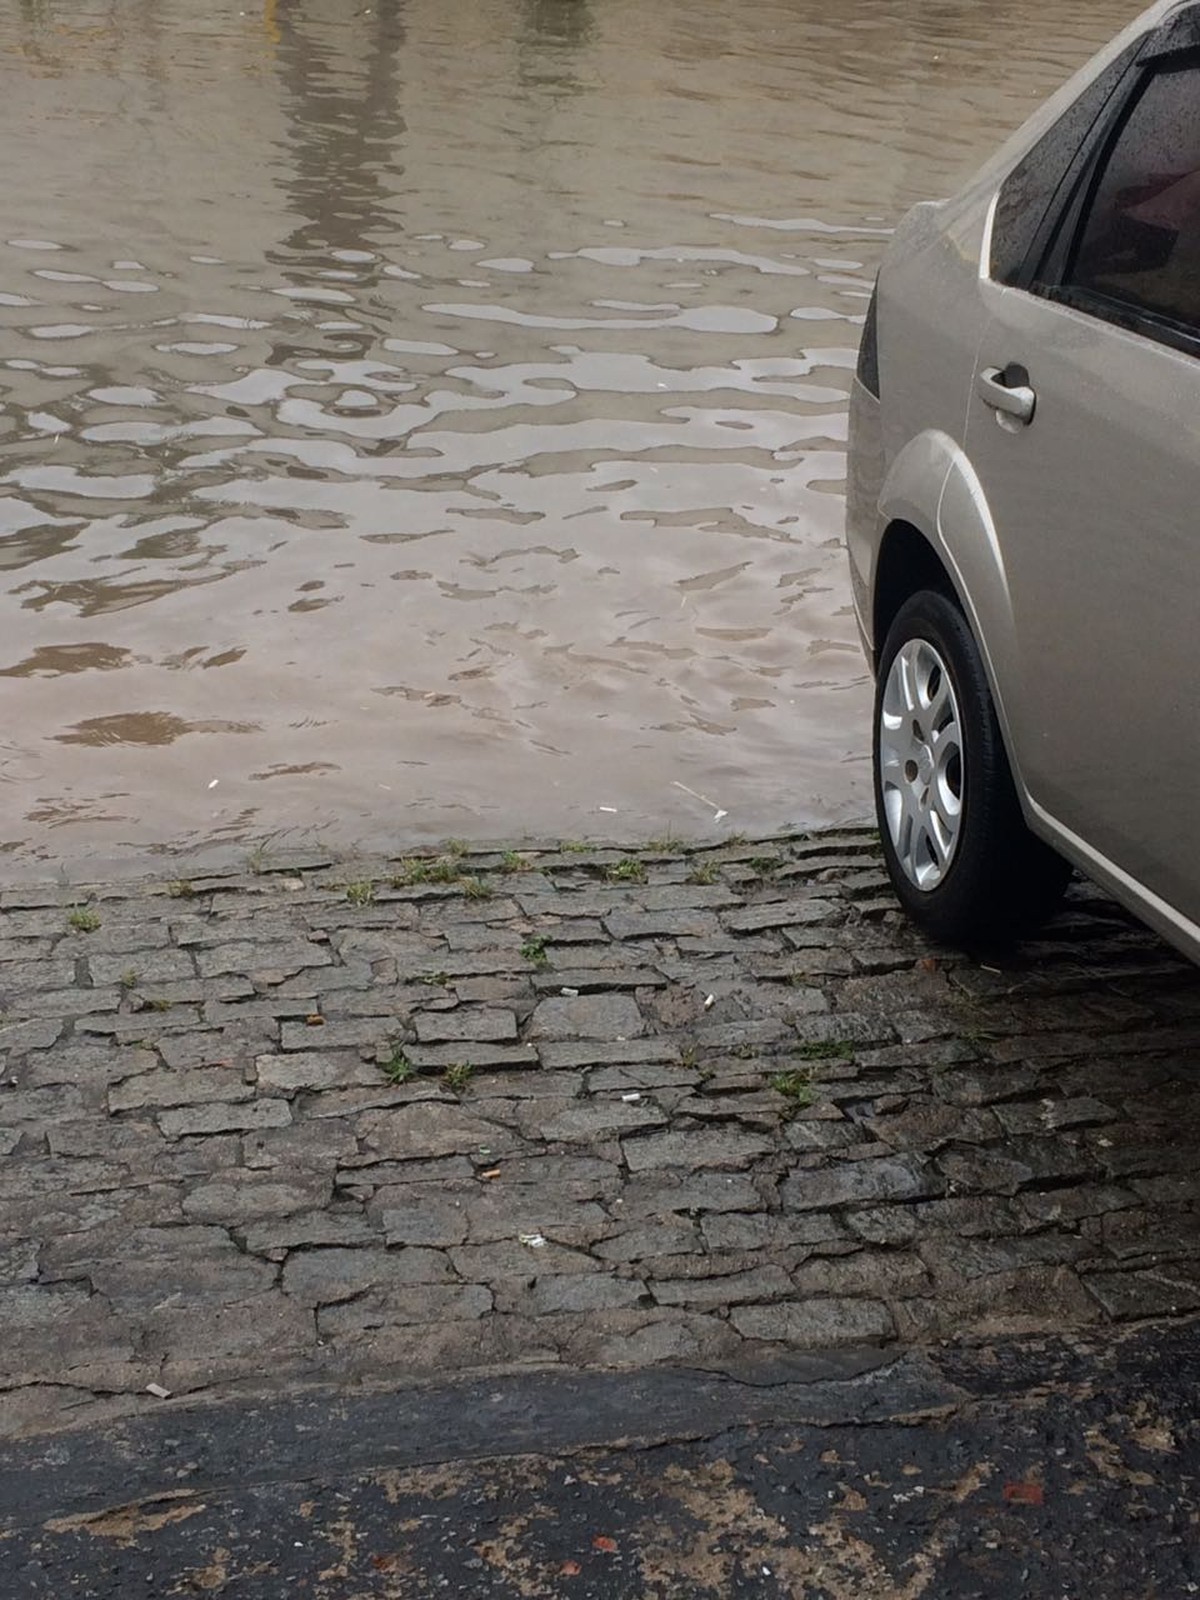 Chuva deixa ruas alagadas em Petrópolis, no RJ - Globo.com